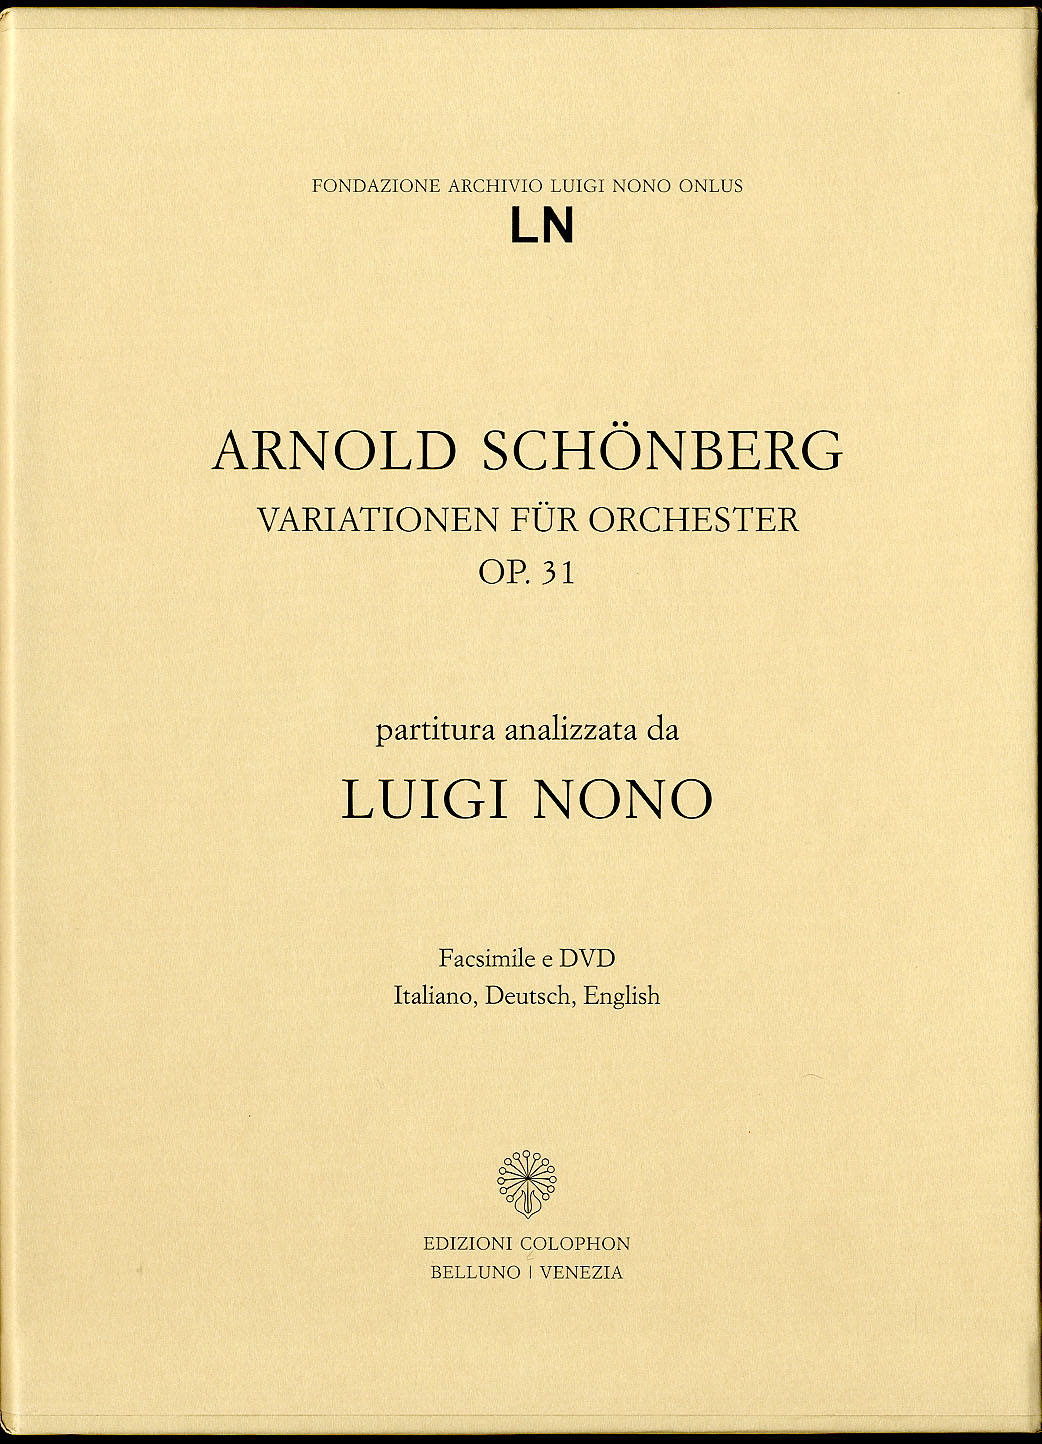 Arnold Schönberg: Variationen für Orchester op. 31. Partitura analizzata da Luigi Nono